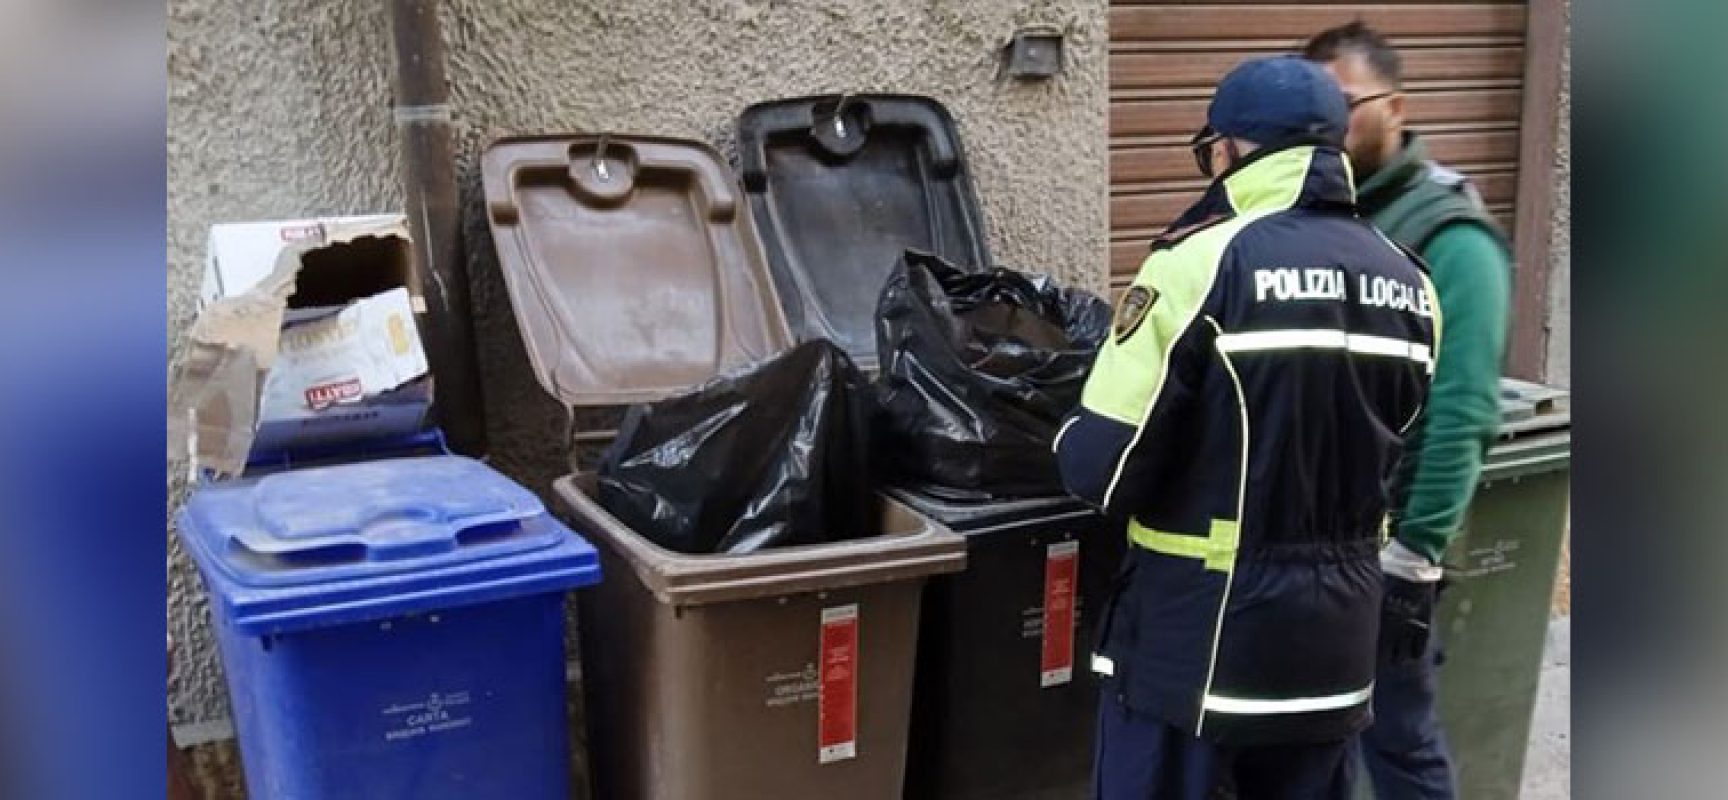 Igiene urbana: continuano controlli per corretto conferimento rifiuti, sei sanzioni comminate